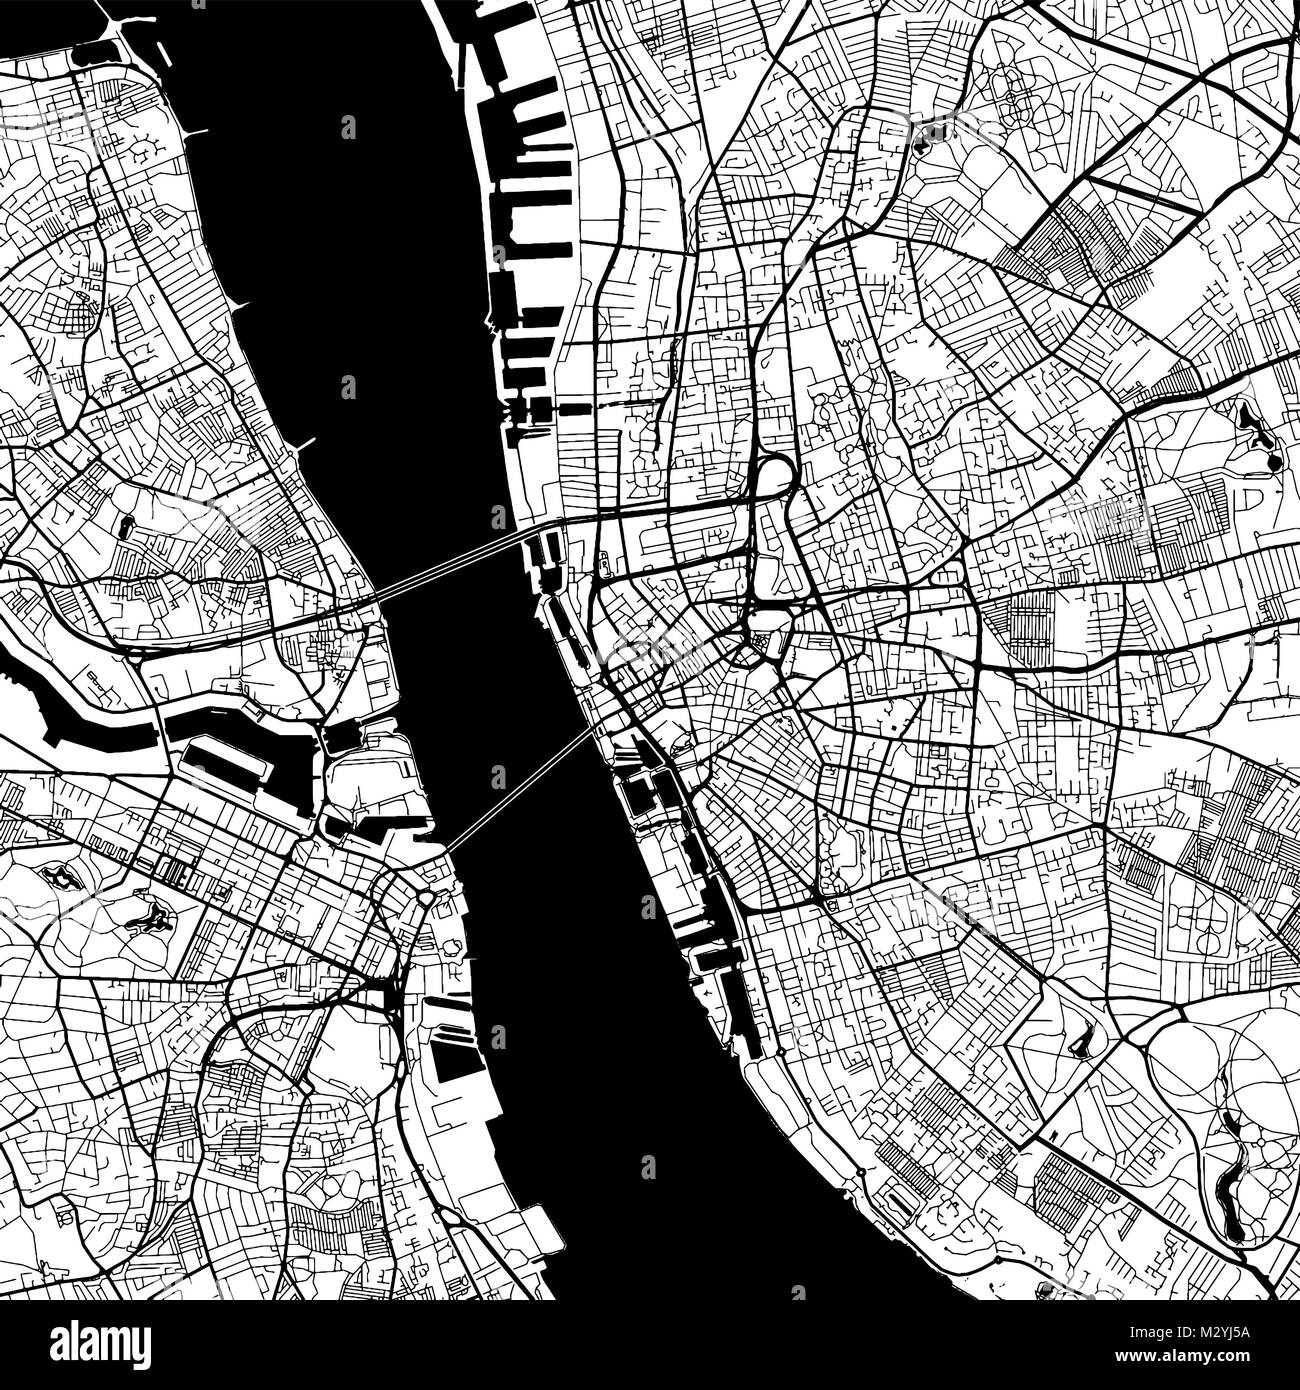 Le centre-ville de Liverpool Carte vectorielle, Version monochrome oevre Contour pour l'infographie, l'arrière-plan des rues et voies d'eau noire Illustration de Vecteur